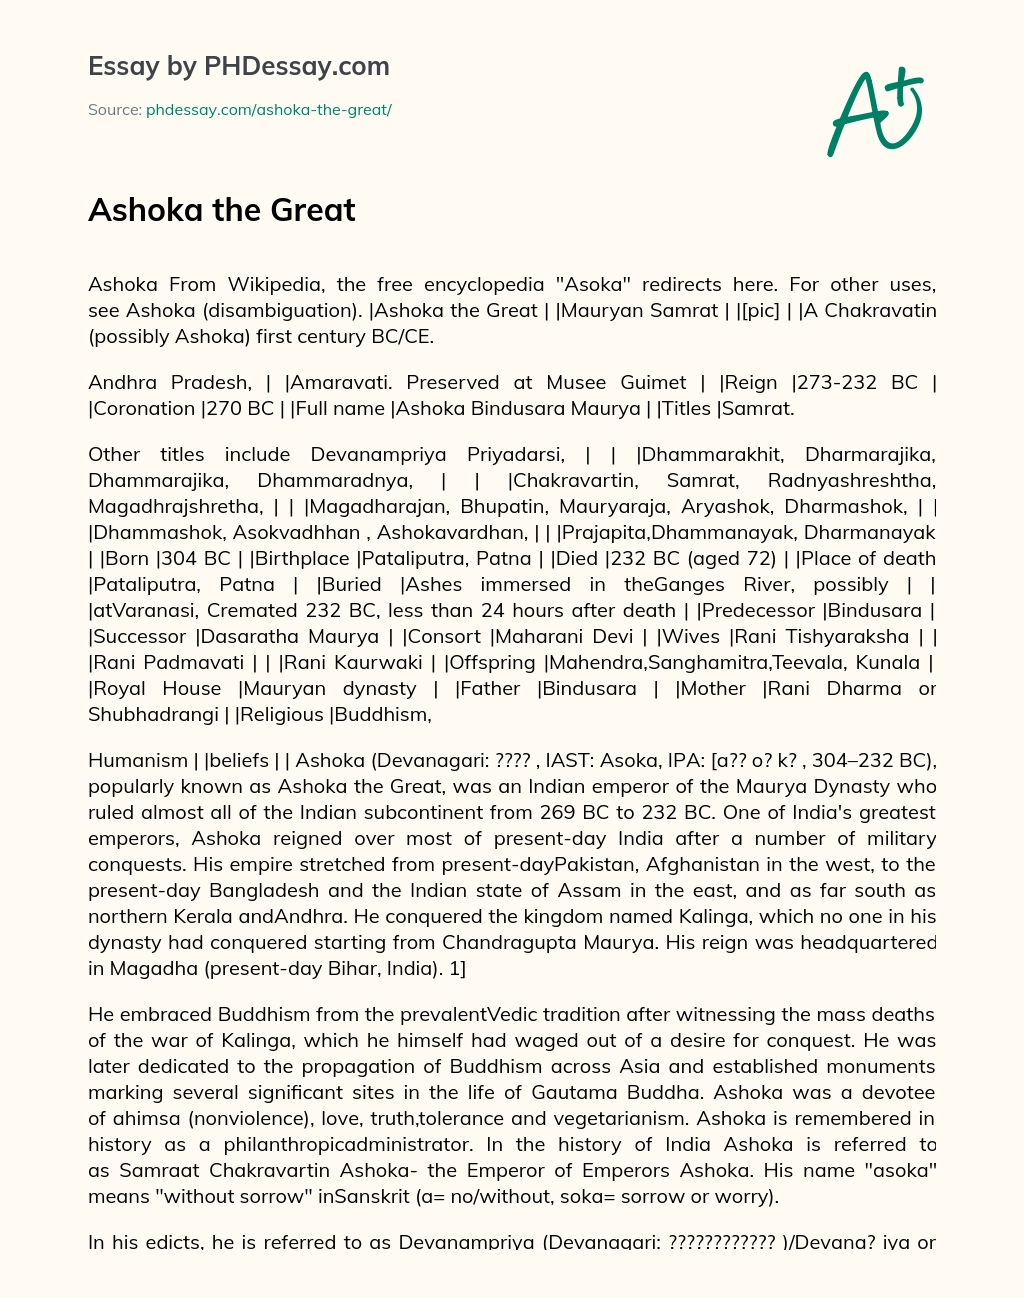 Ashoka the Great essay